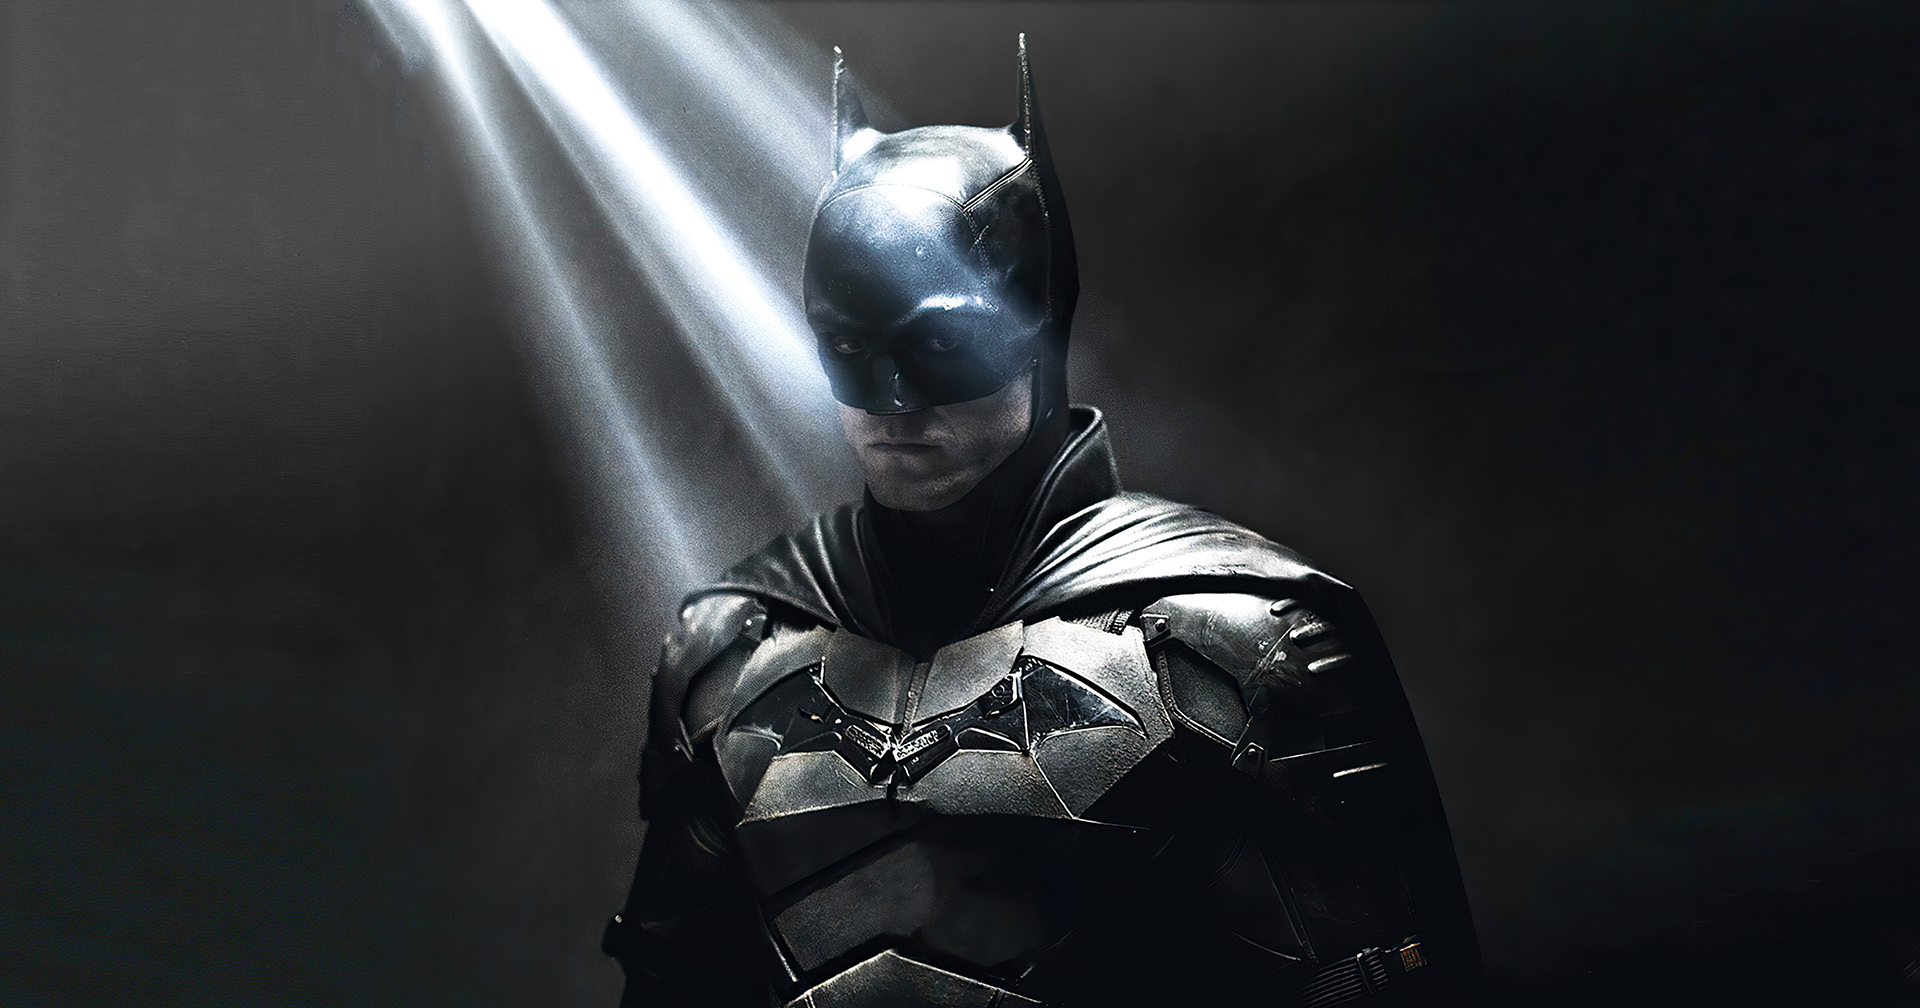 ฟังสกอร์ใหม่ของ ‘The Batman’ โดยฝีมือประพันธ์ของ ไมเคิล จิอัคชิโน